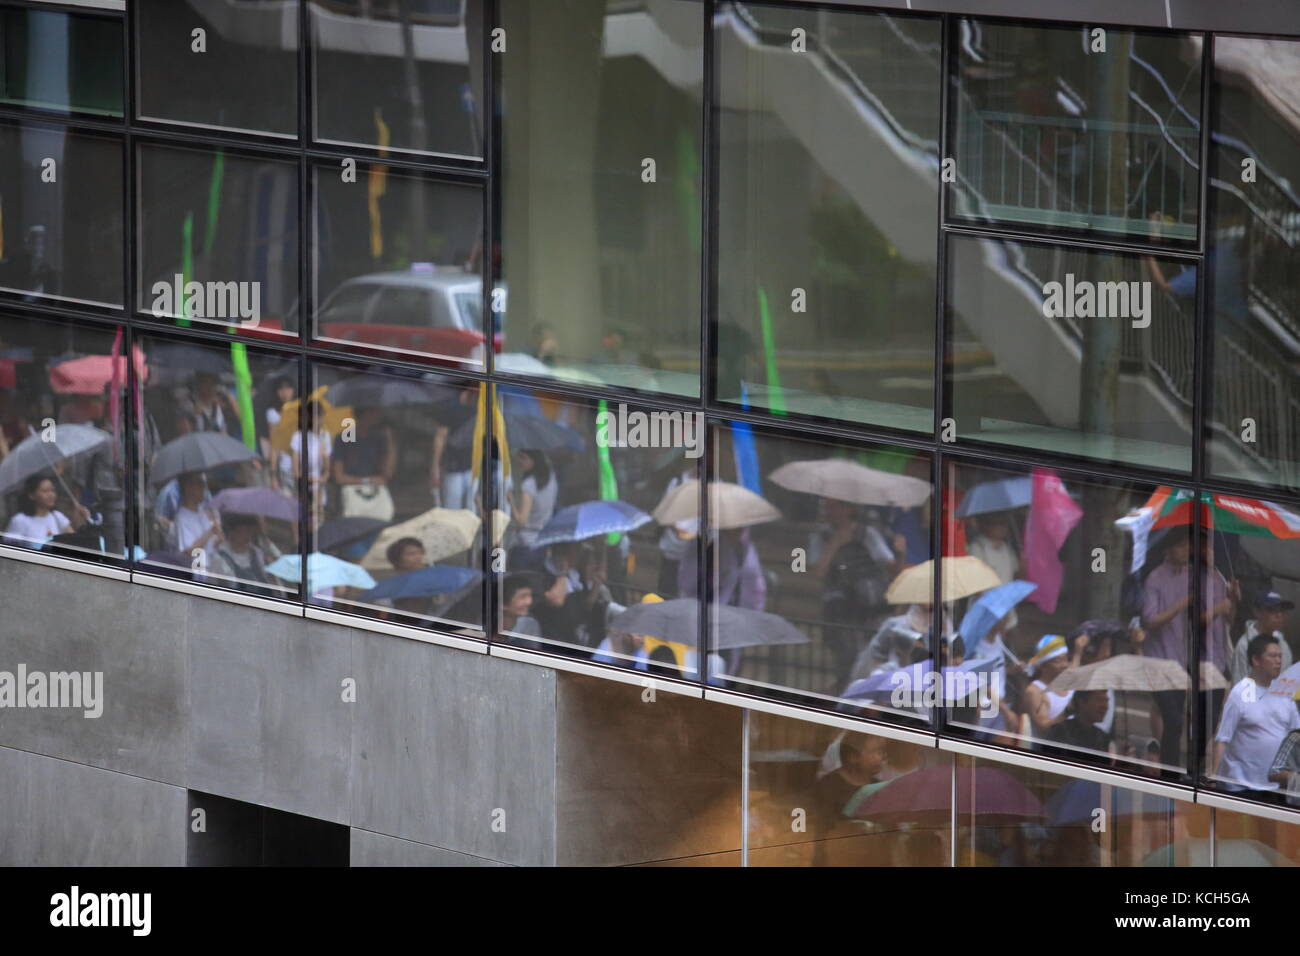 Jour rainly à hong kong, un manifestant juillet rallye Banque D'Images